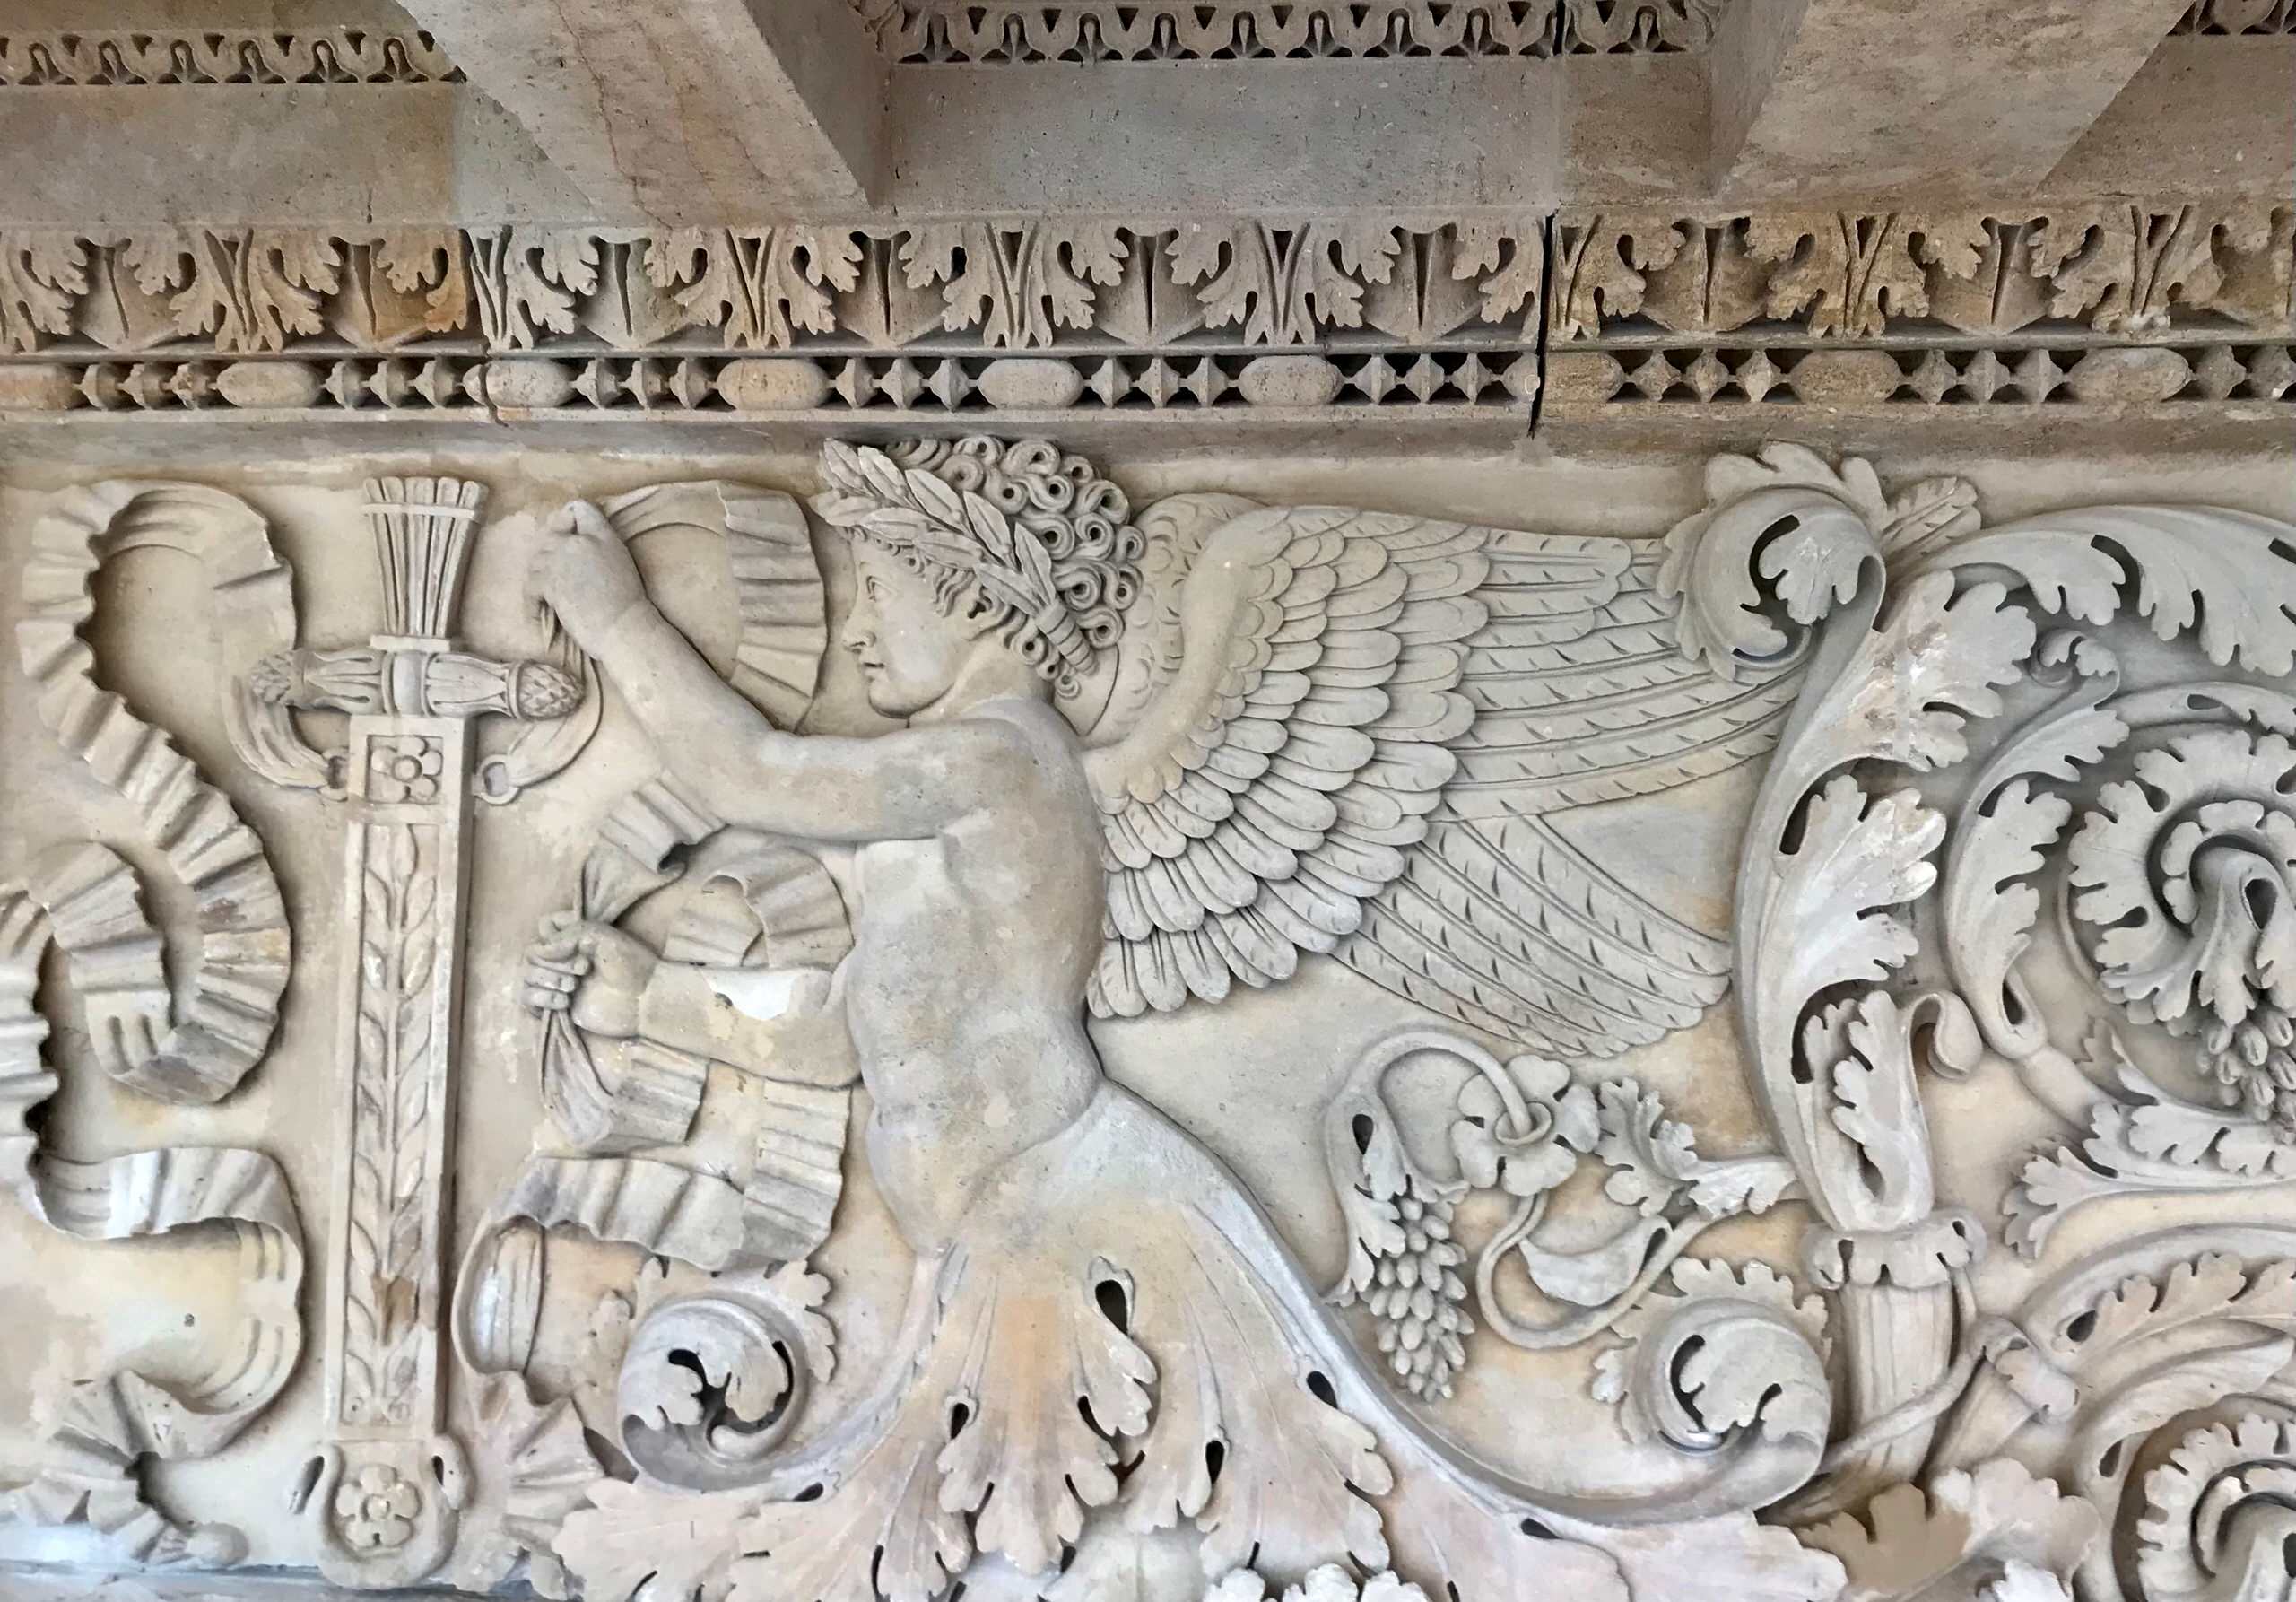 La symbolique du décor en bas relief orne la façade nord